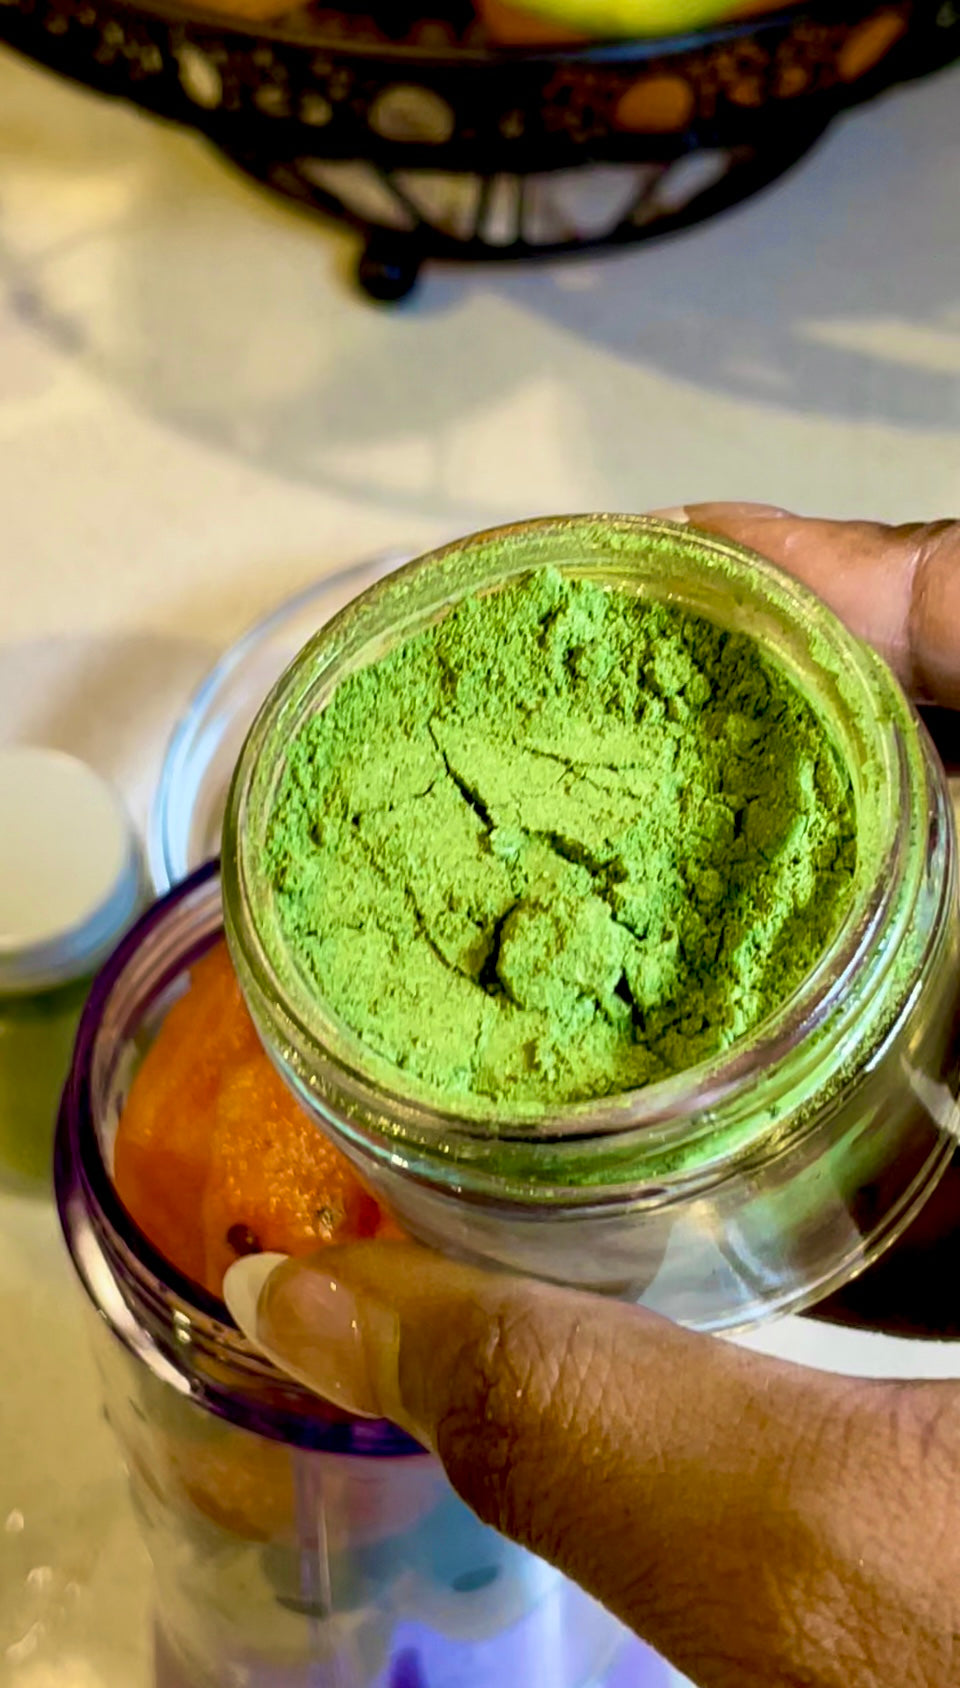 Moringa Miracle Superfood - Powder Supplement - Sweeter Juice Skin